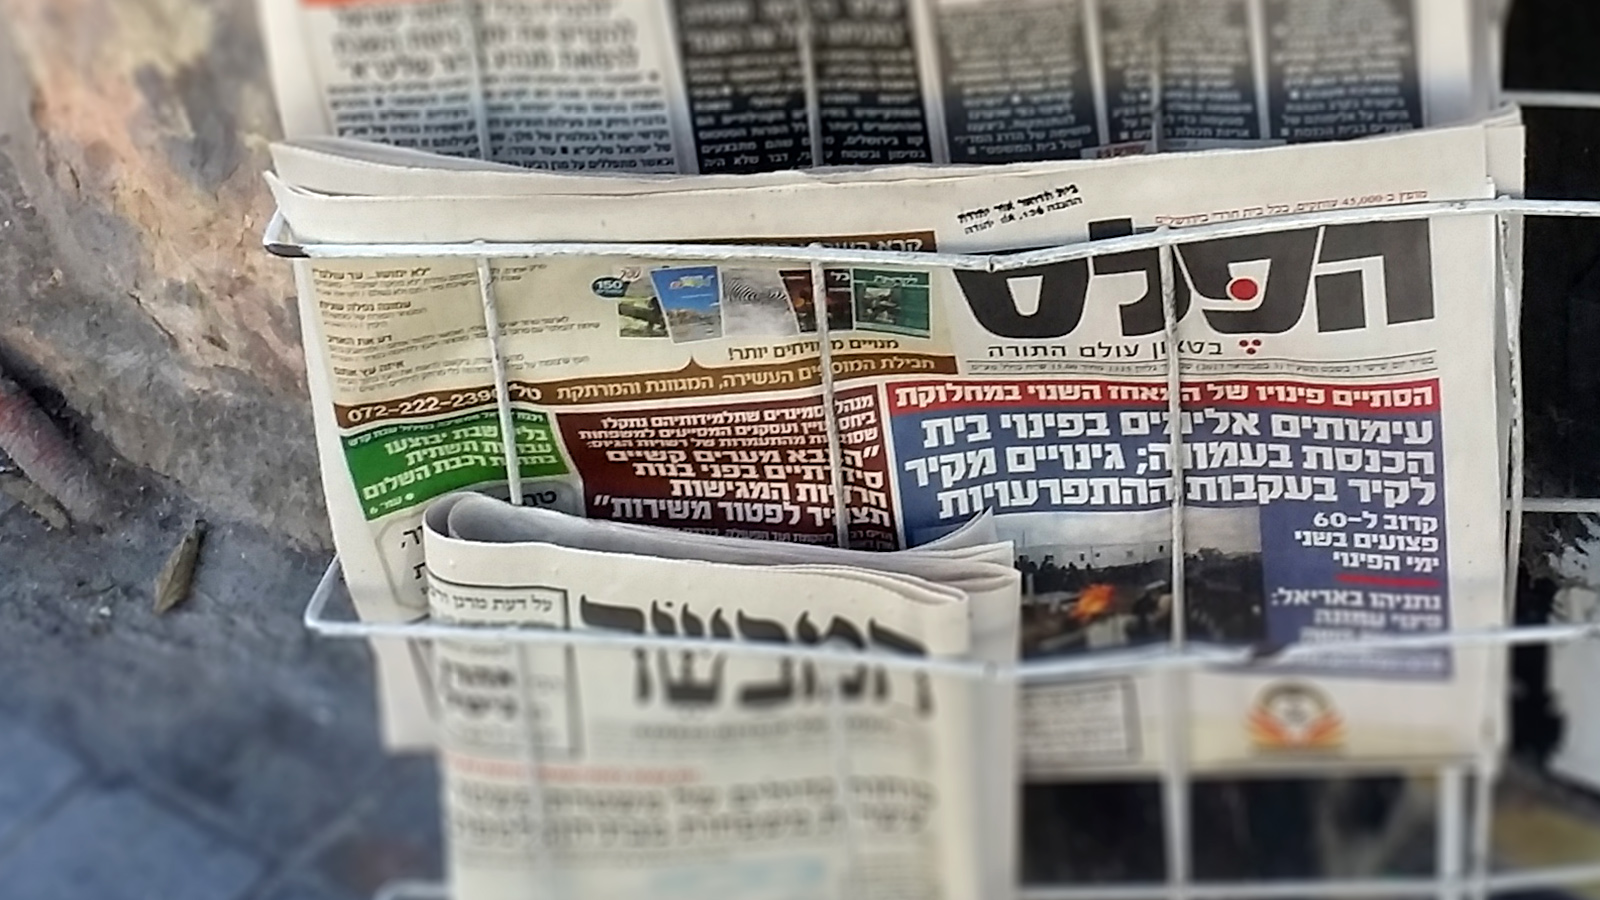 עיתונים חרדיים בחנות בירושלים ברחוב יפו (צילום: ניצן צבי כהן).